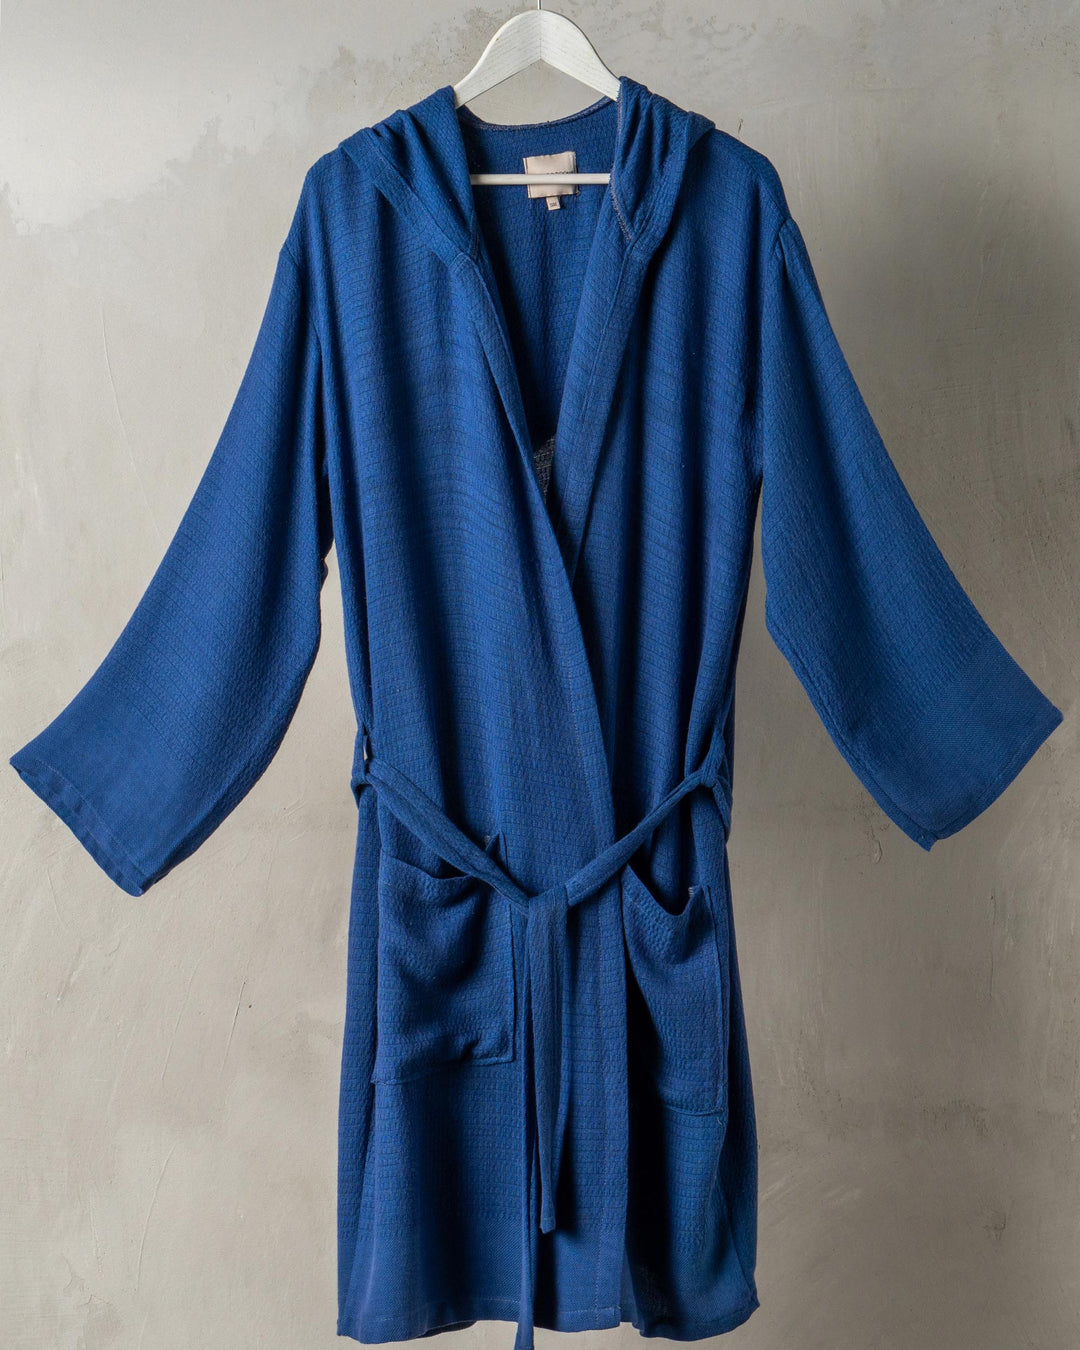 Hand-loomed waffle textured bathrobe blue